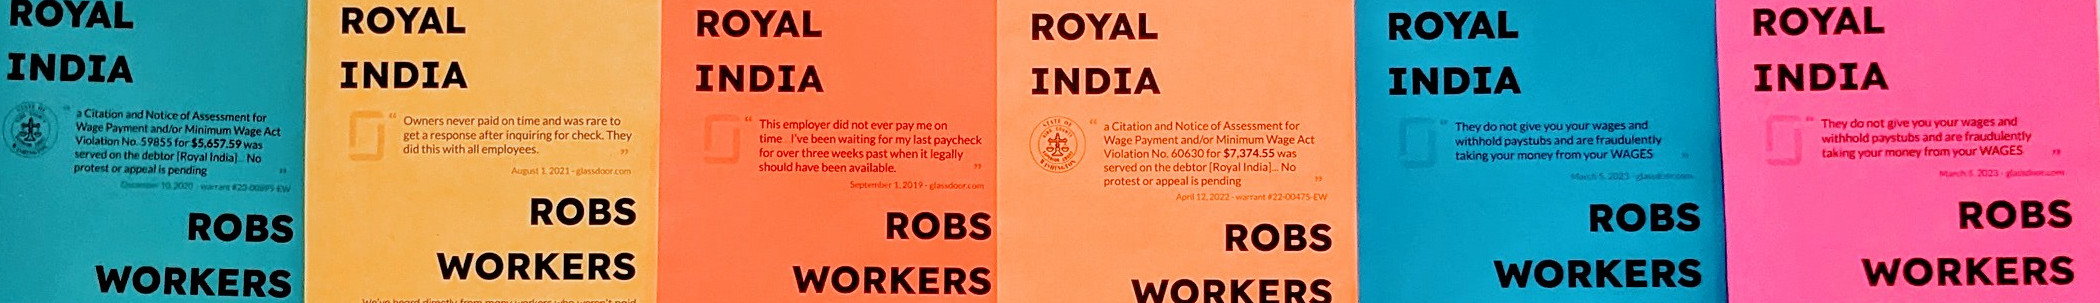 Wage Theft at Royal India